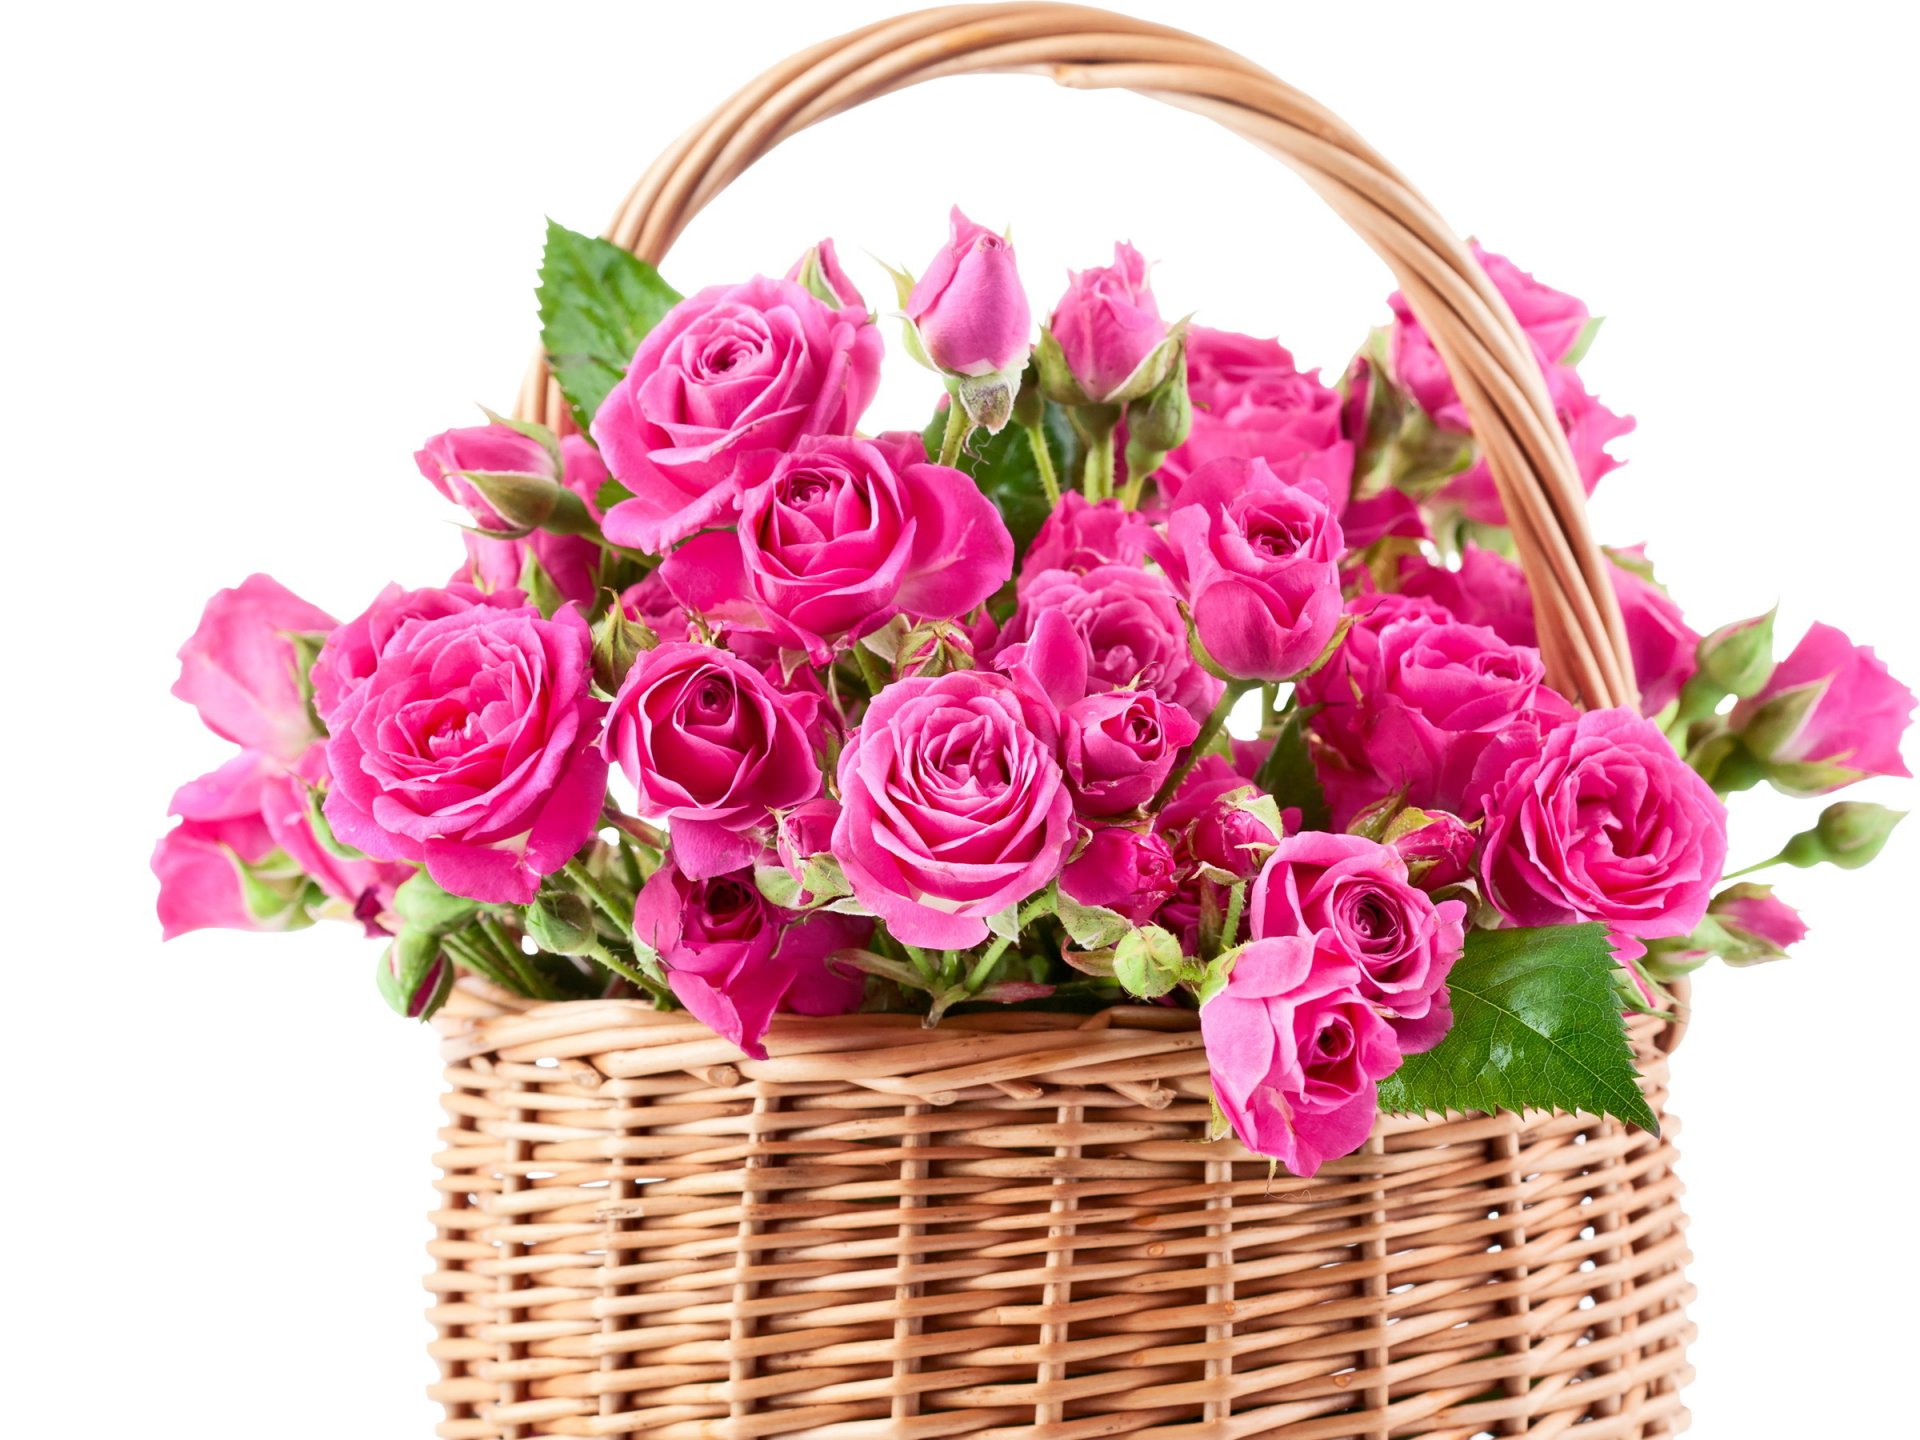 rose rosa fiori bello bouquet cestino cestino